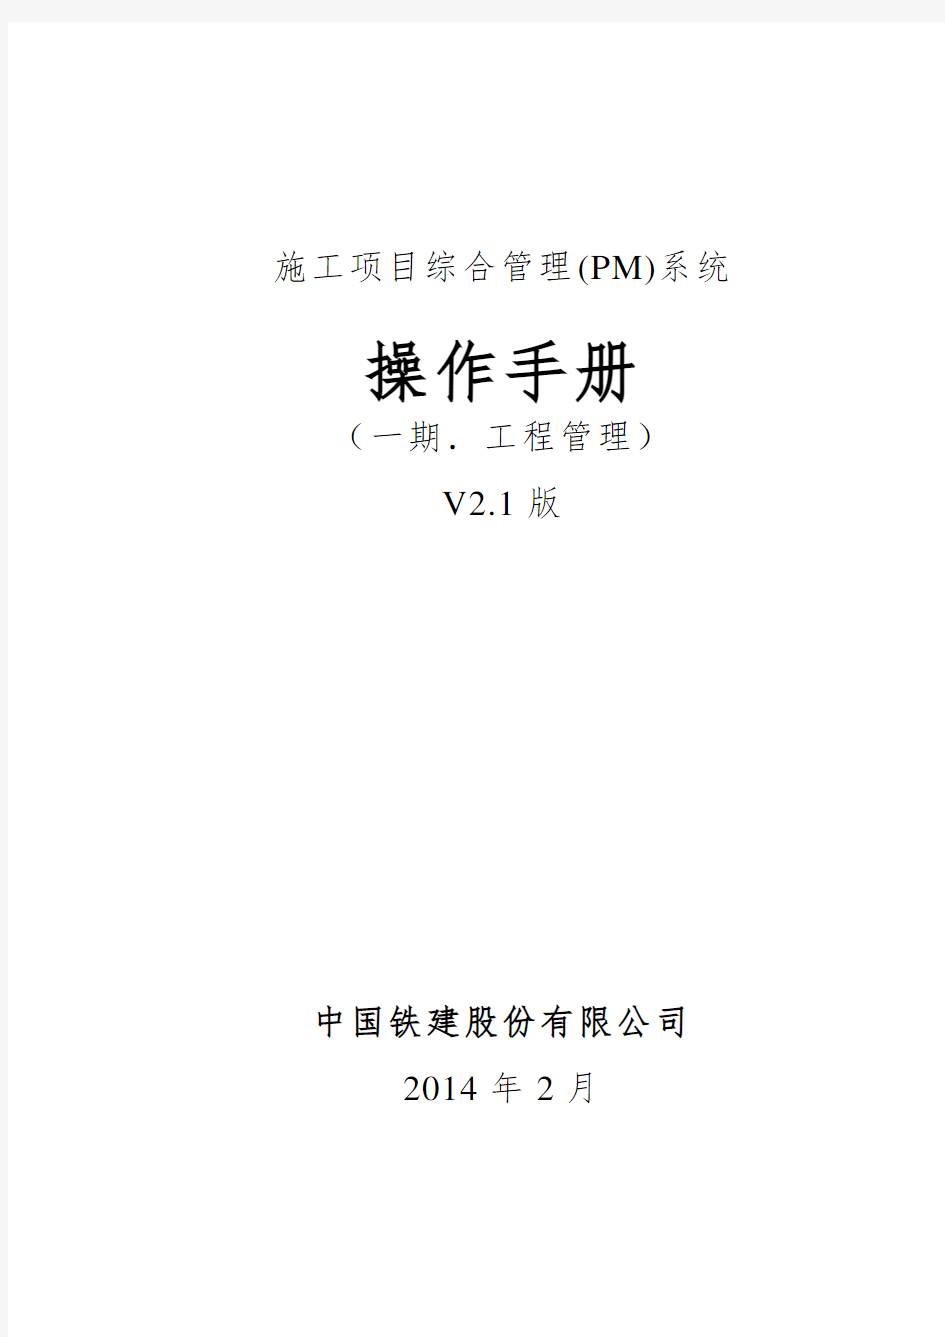 07-04操作手册(工程管理)V2.1